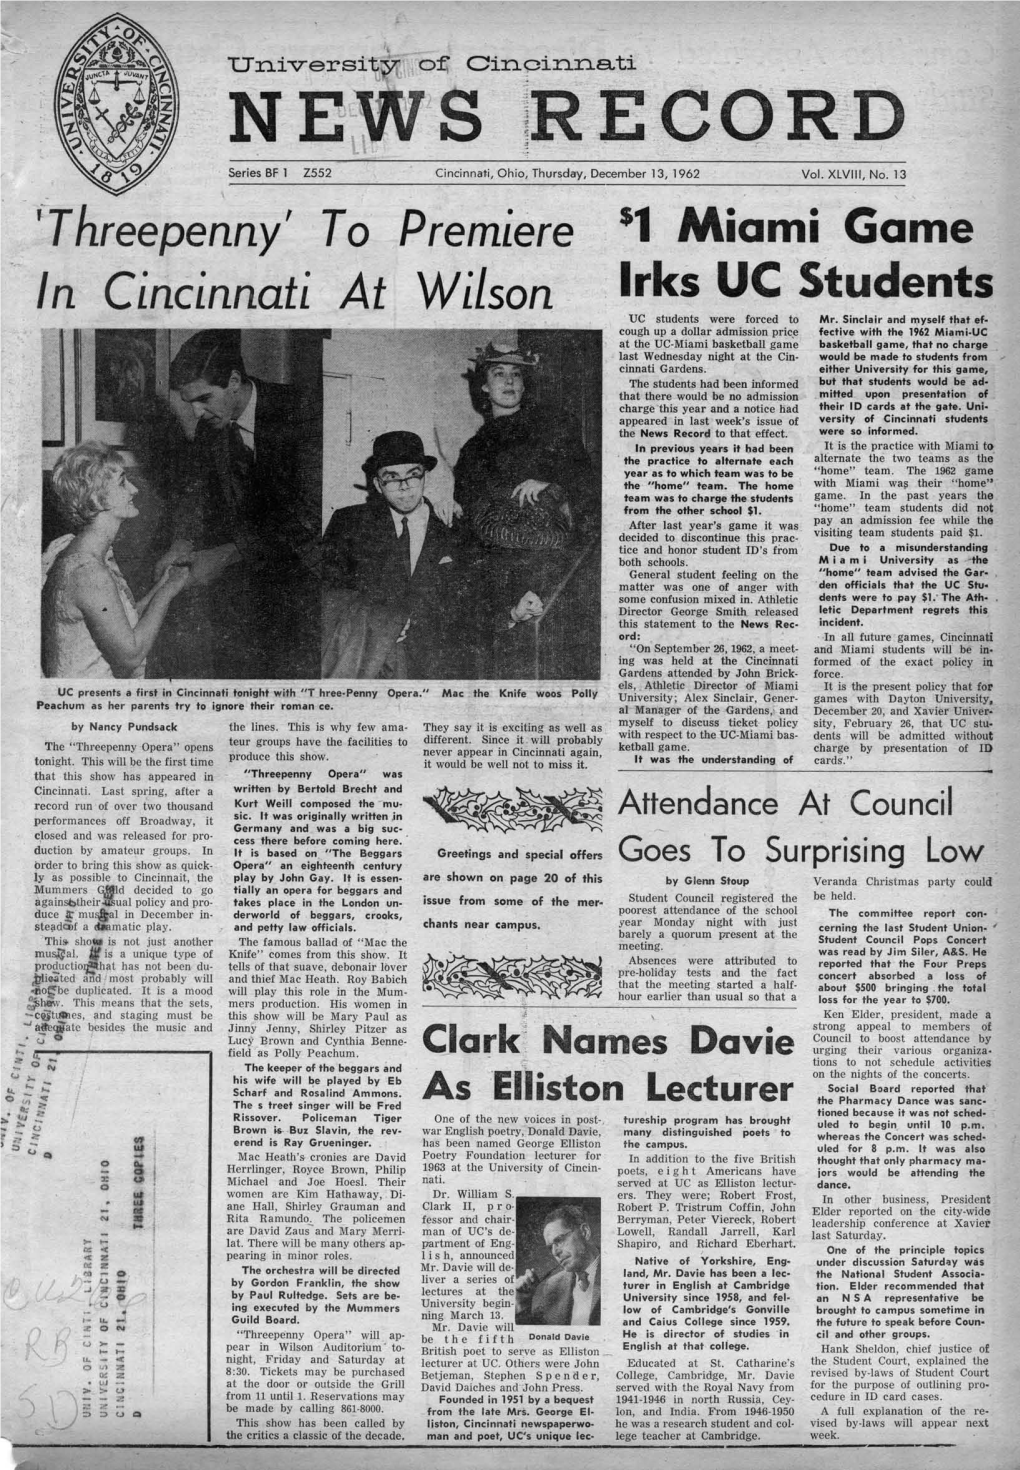 University of Cincinnati News Record. Thursday, December 13, 1962. Vol. XLVIII, No